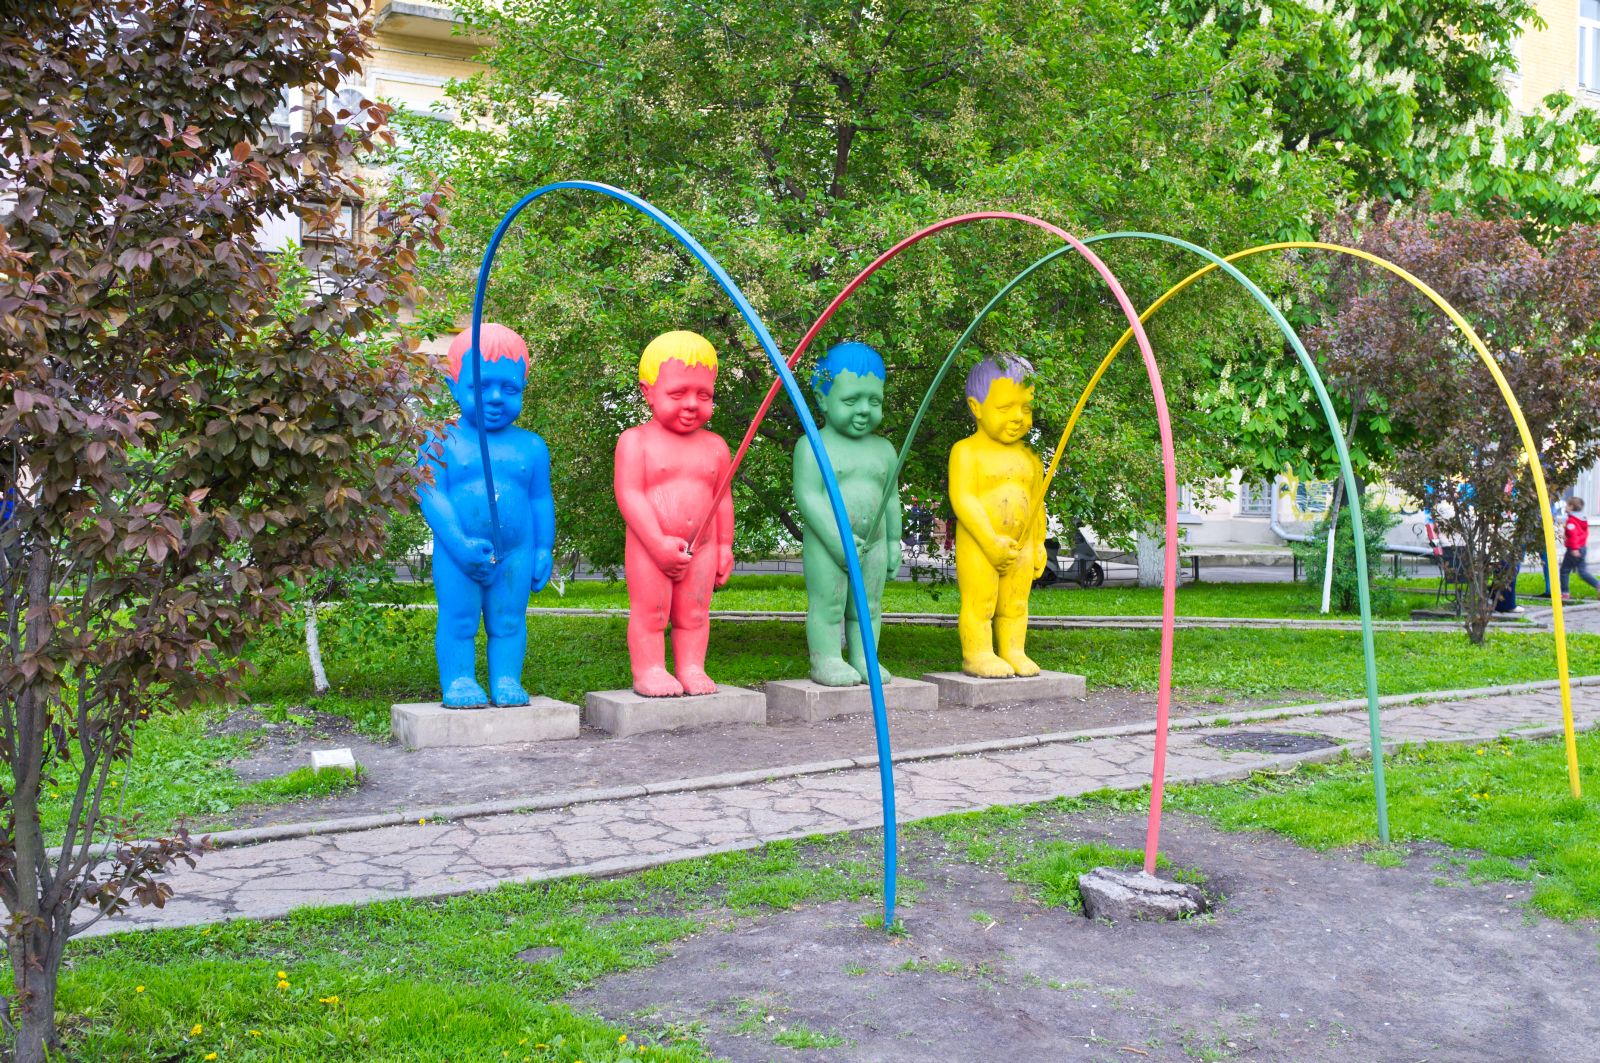 Sochy zdobí ukrajinský park.